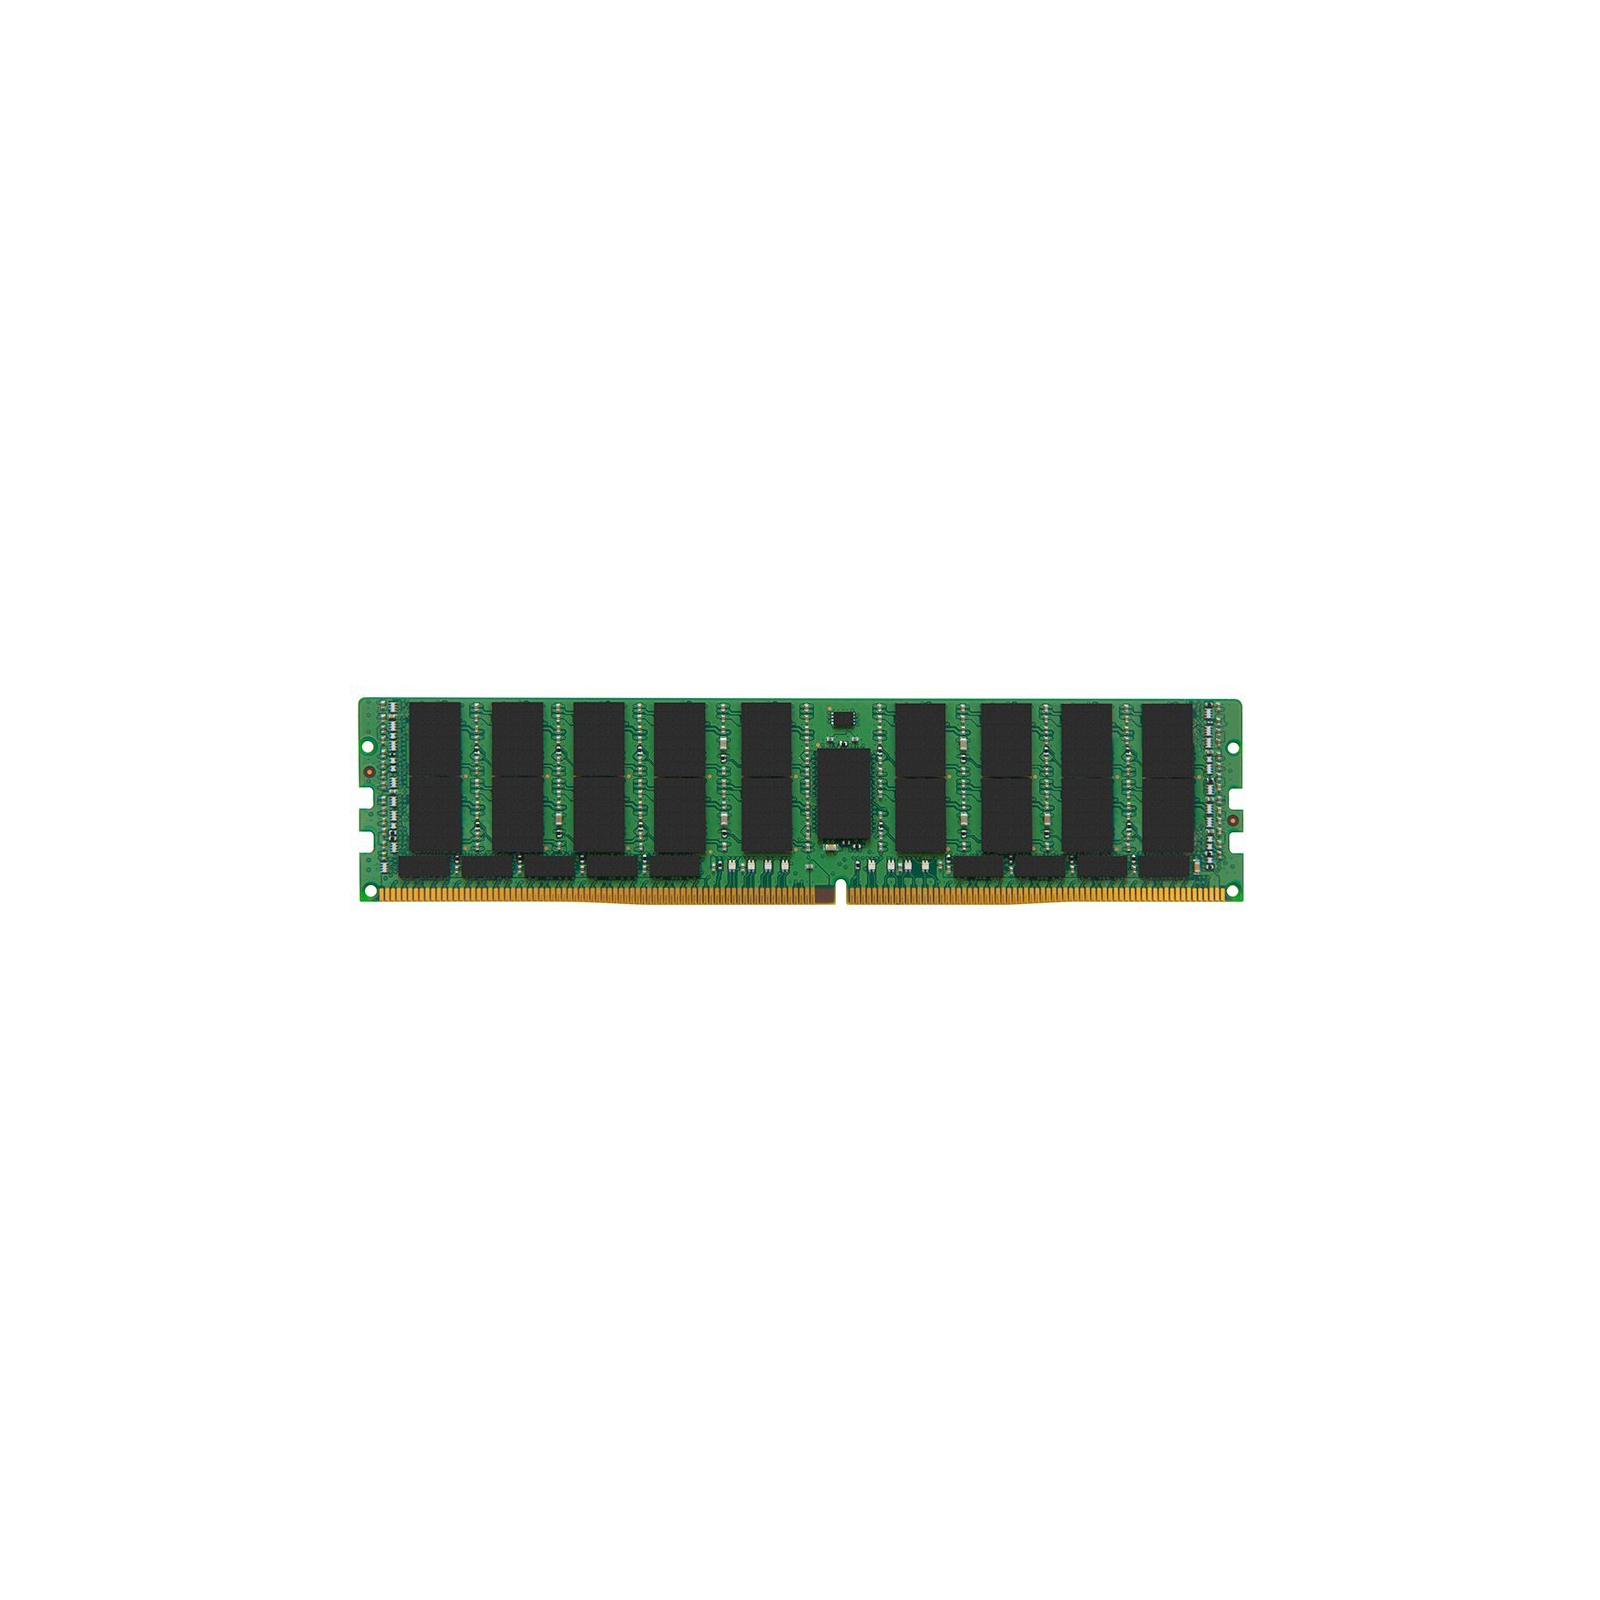 Модуль пам'яті для сервера DDR4 32GB ECC RDIMM 2933MHz 2Rx4 1.2V CL21 HP (P19043-B21)